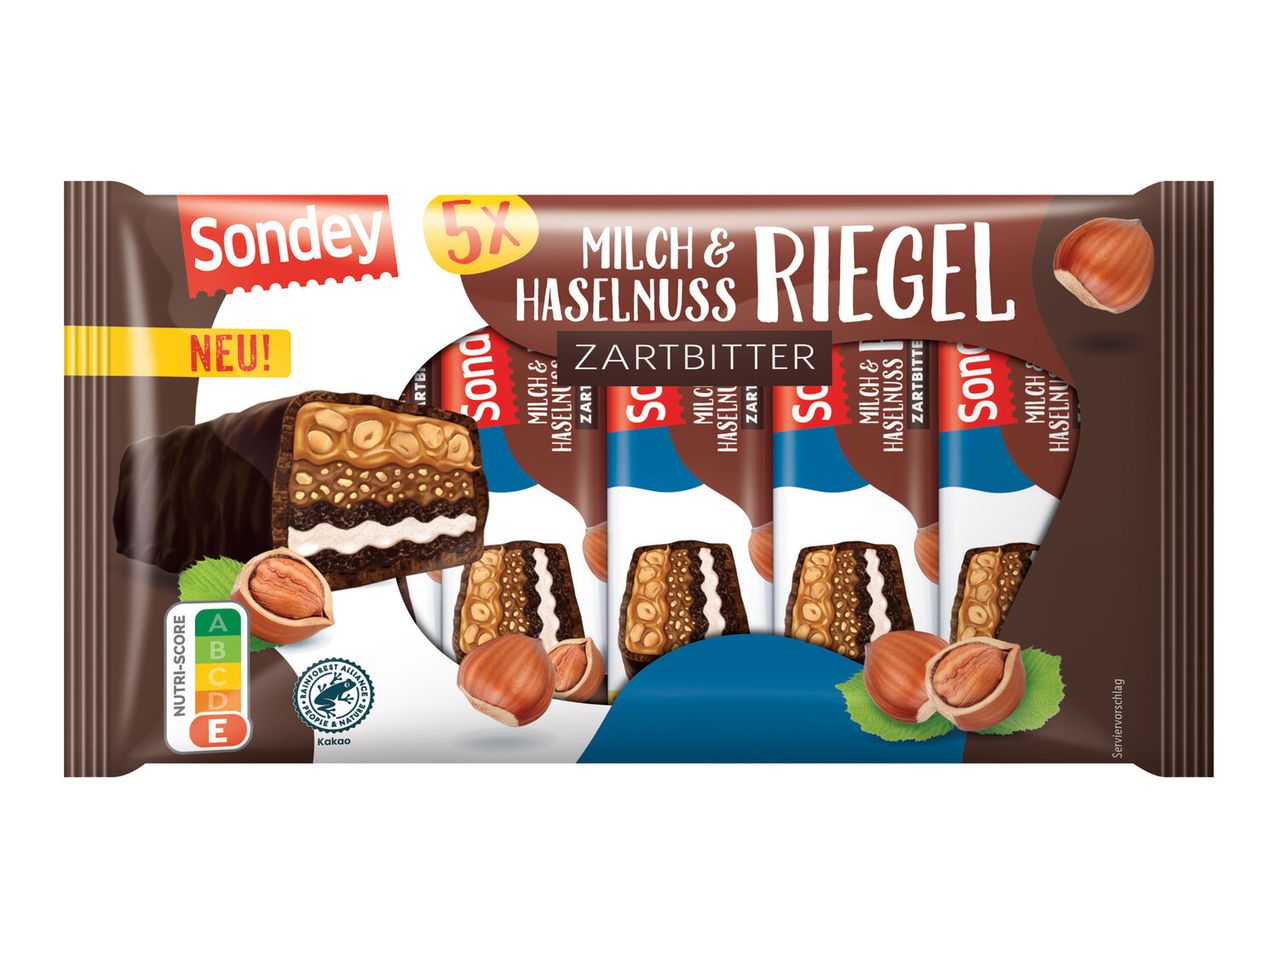 Sondey Milch & Haselnuss Riegel Zartbitter